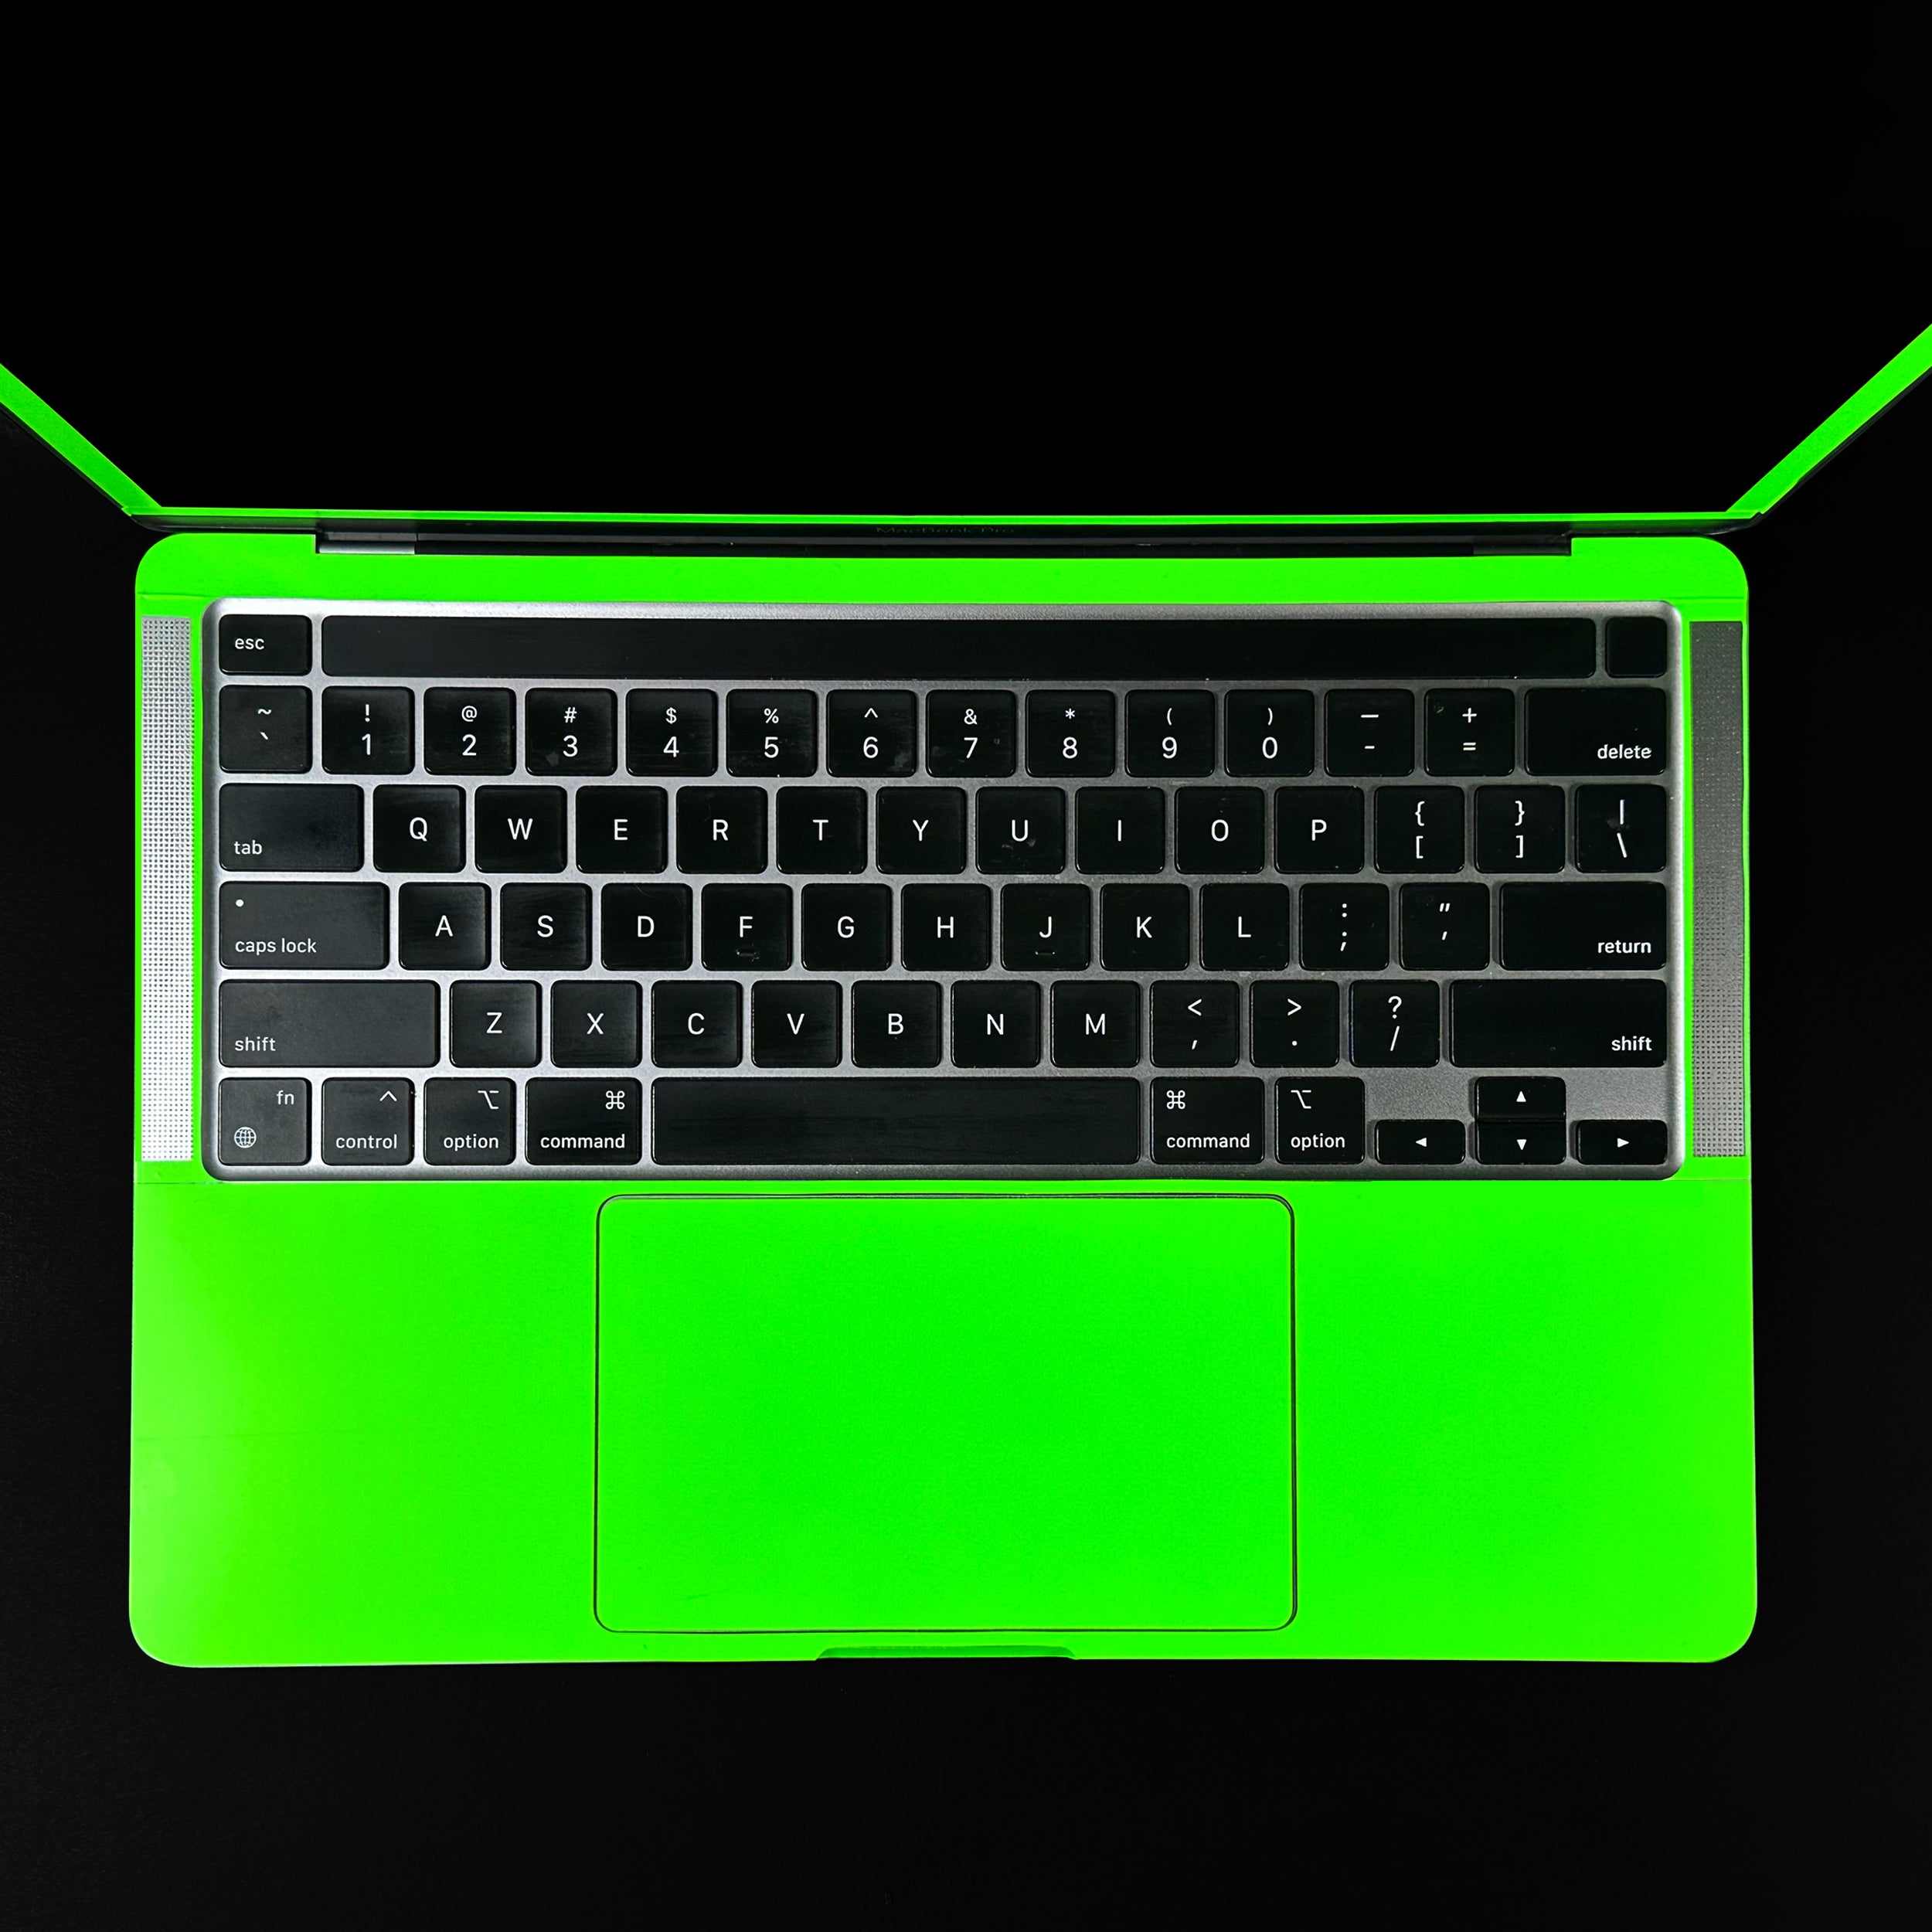 Neon Green (MacBook Skin)